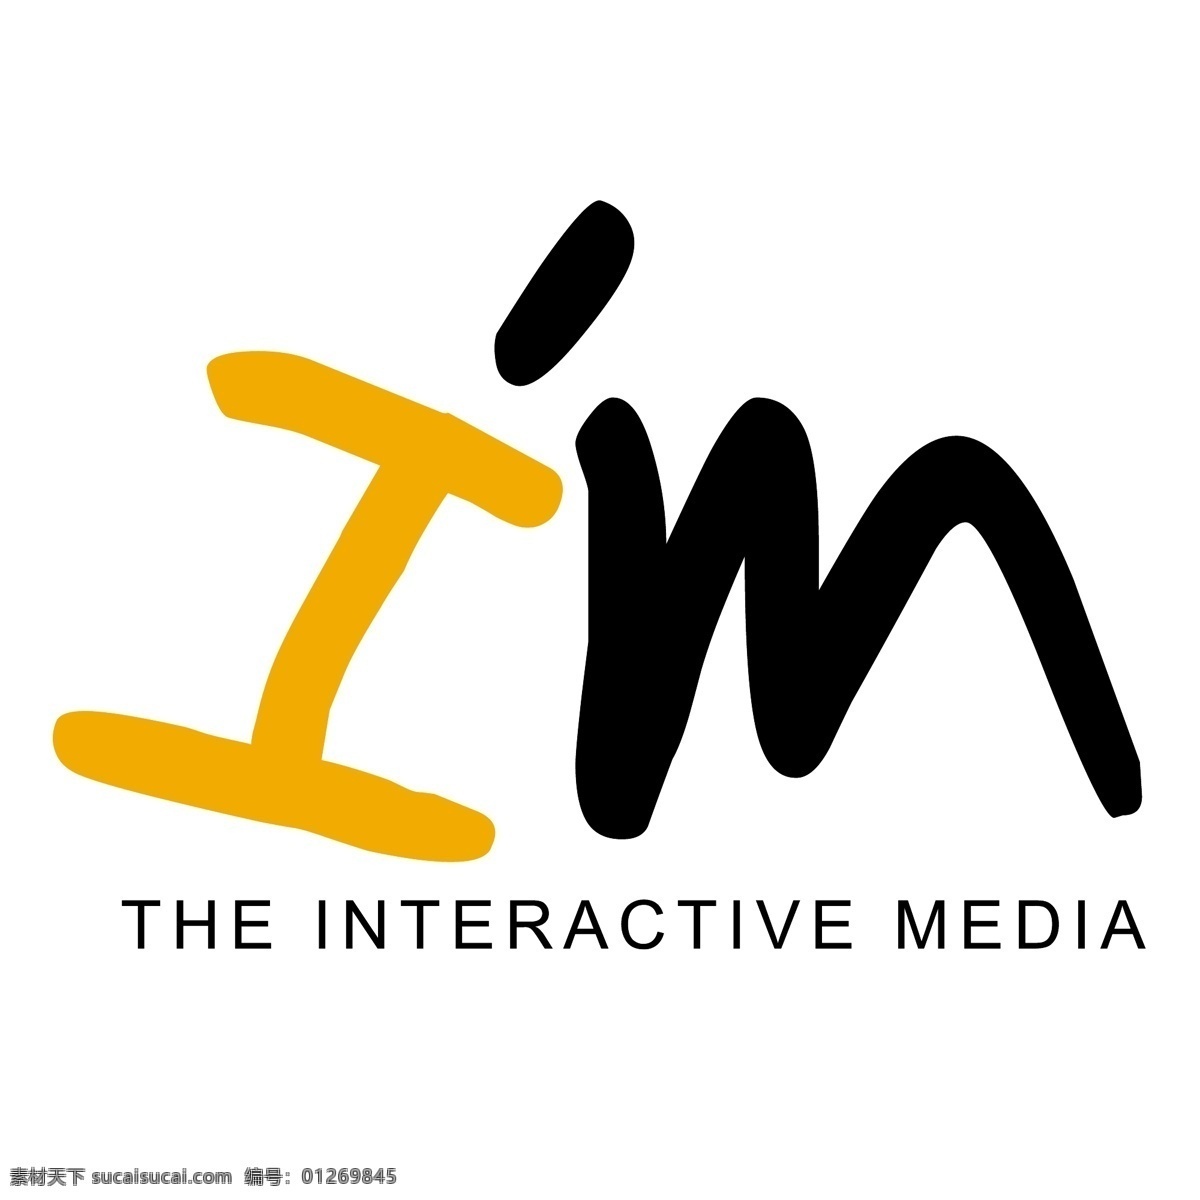 互动 媒体 互动媒体 标识 向量 标志 载体 媒体互动 媒体艺术 媒体下载 下载媒体载体 矢量图 建筑家居